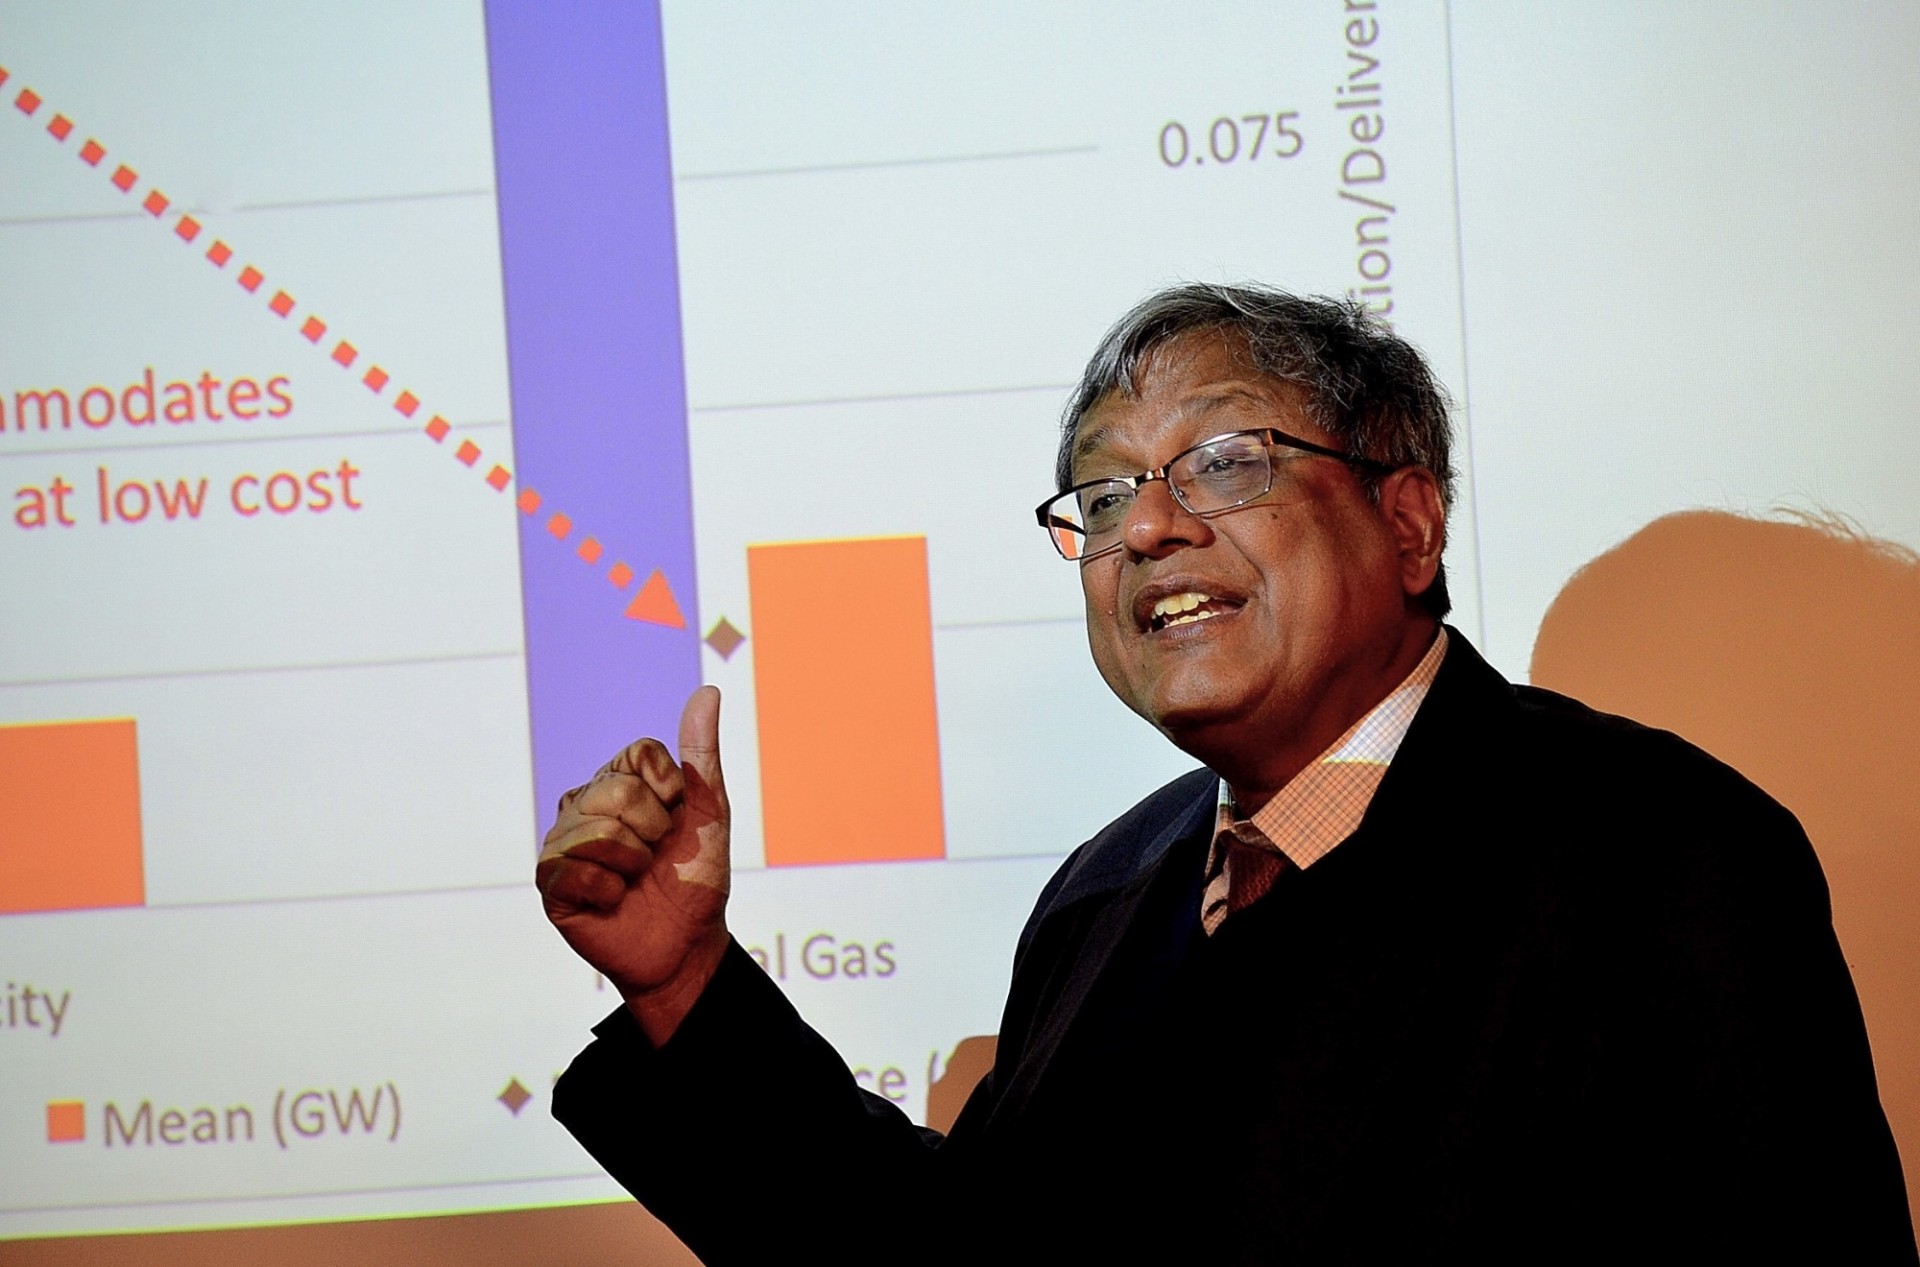 Professor Vijay Modi in Chile